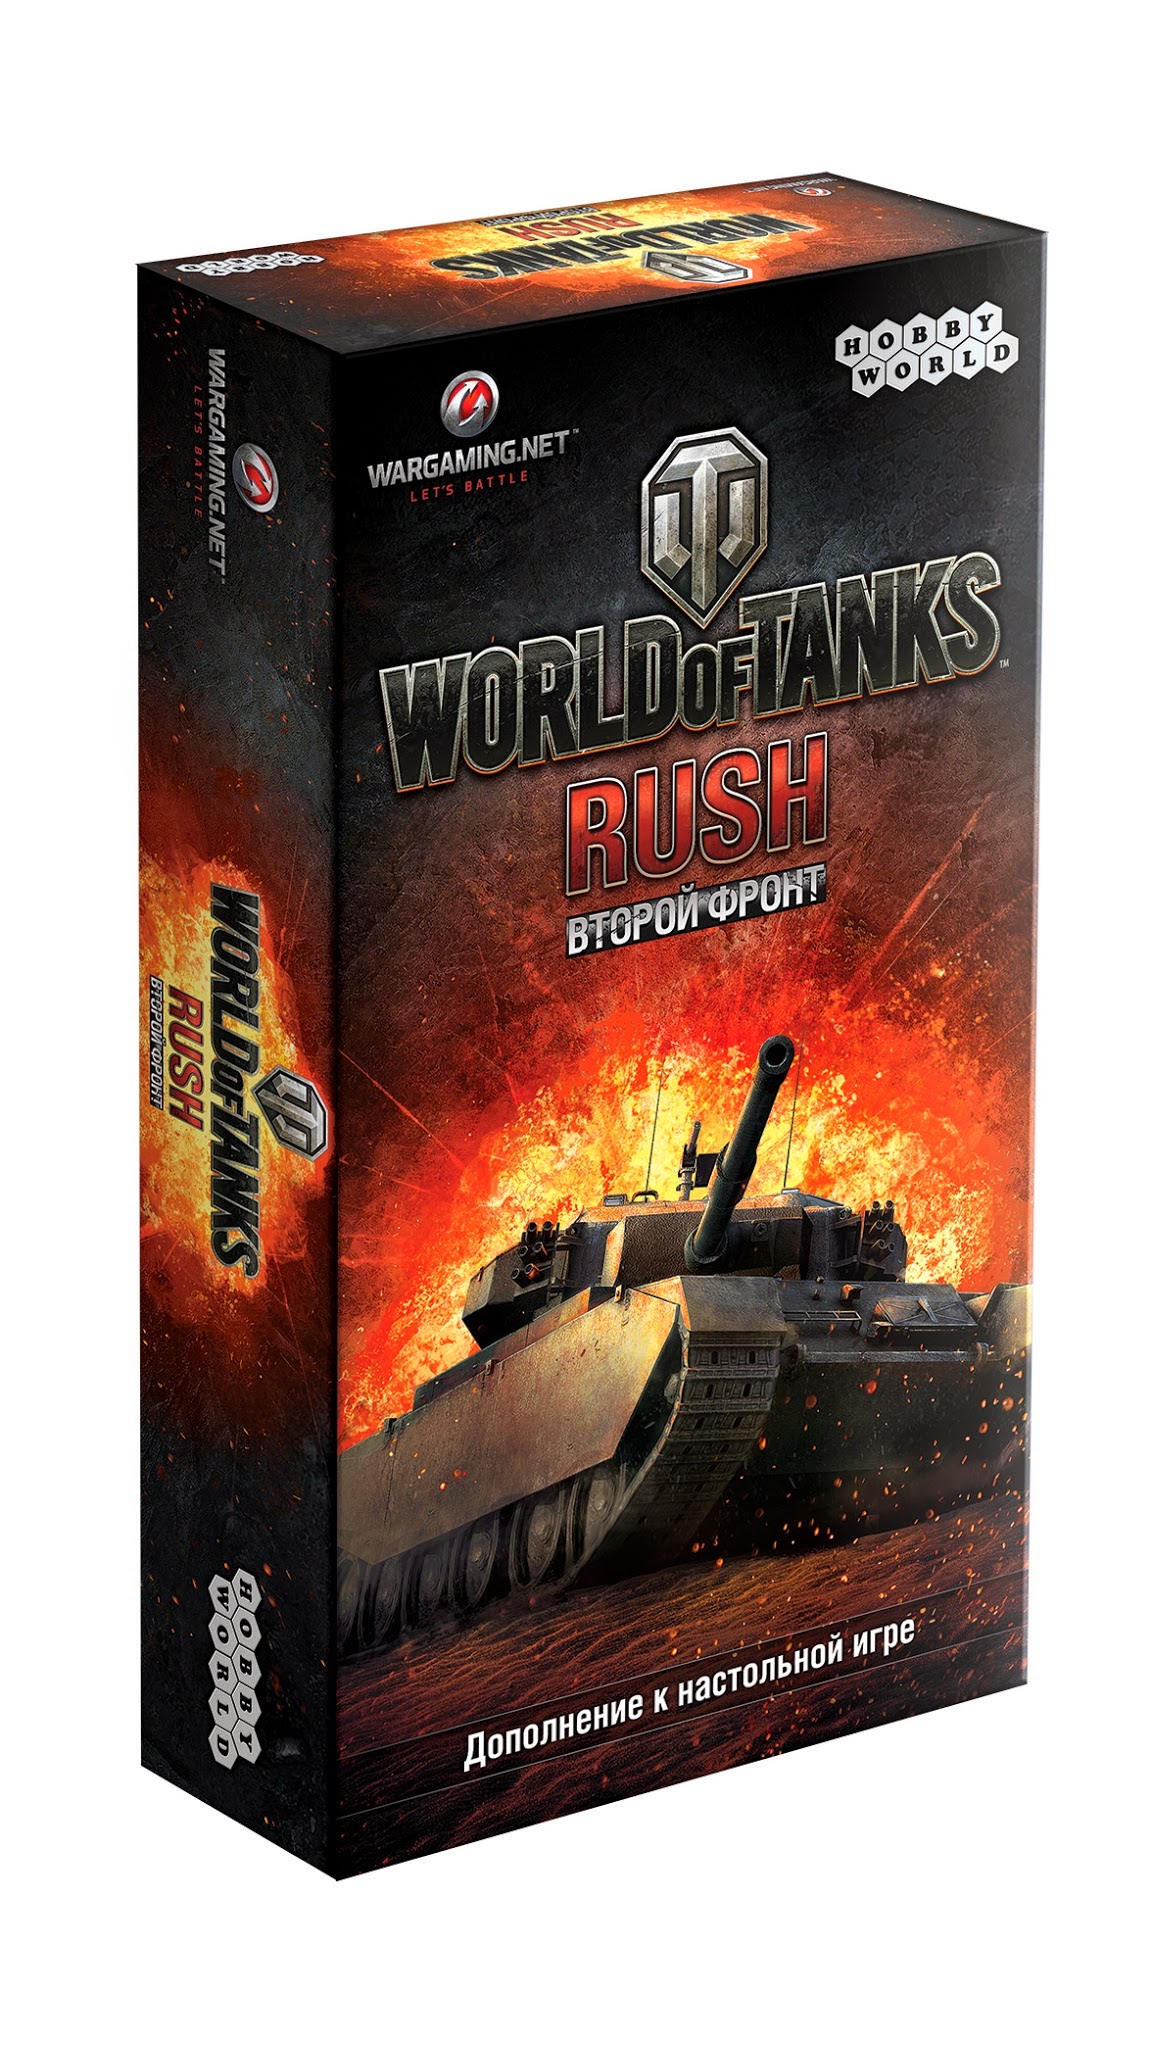   -   World of Tanks: Rush.  